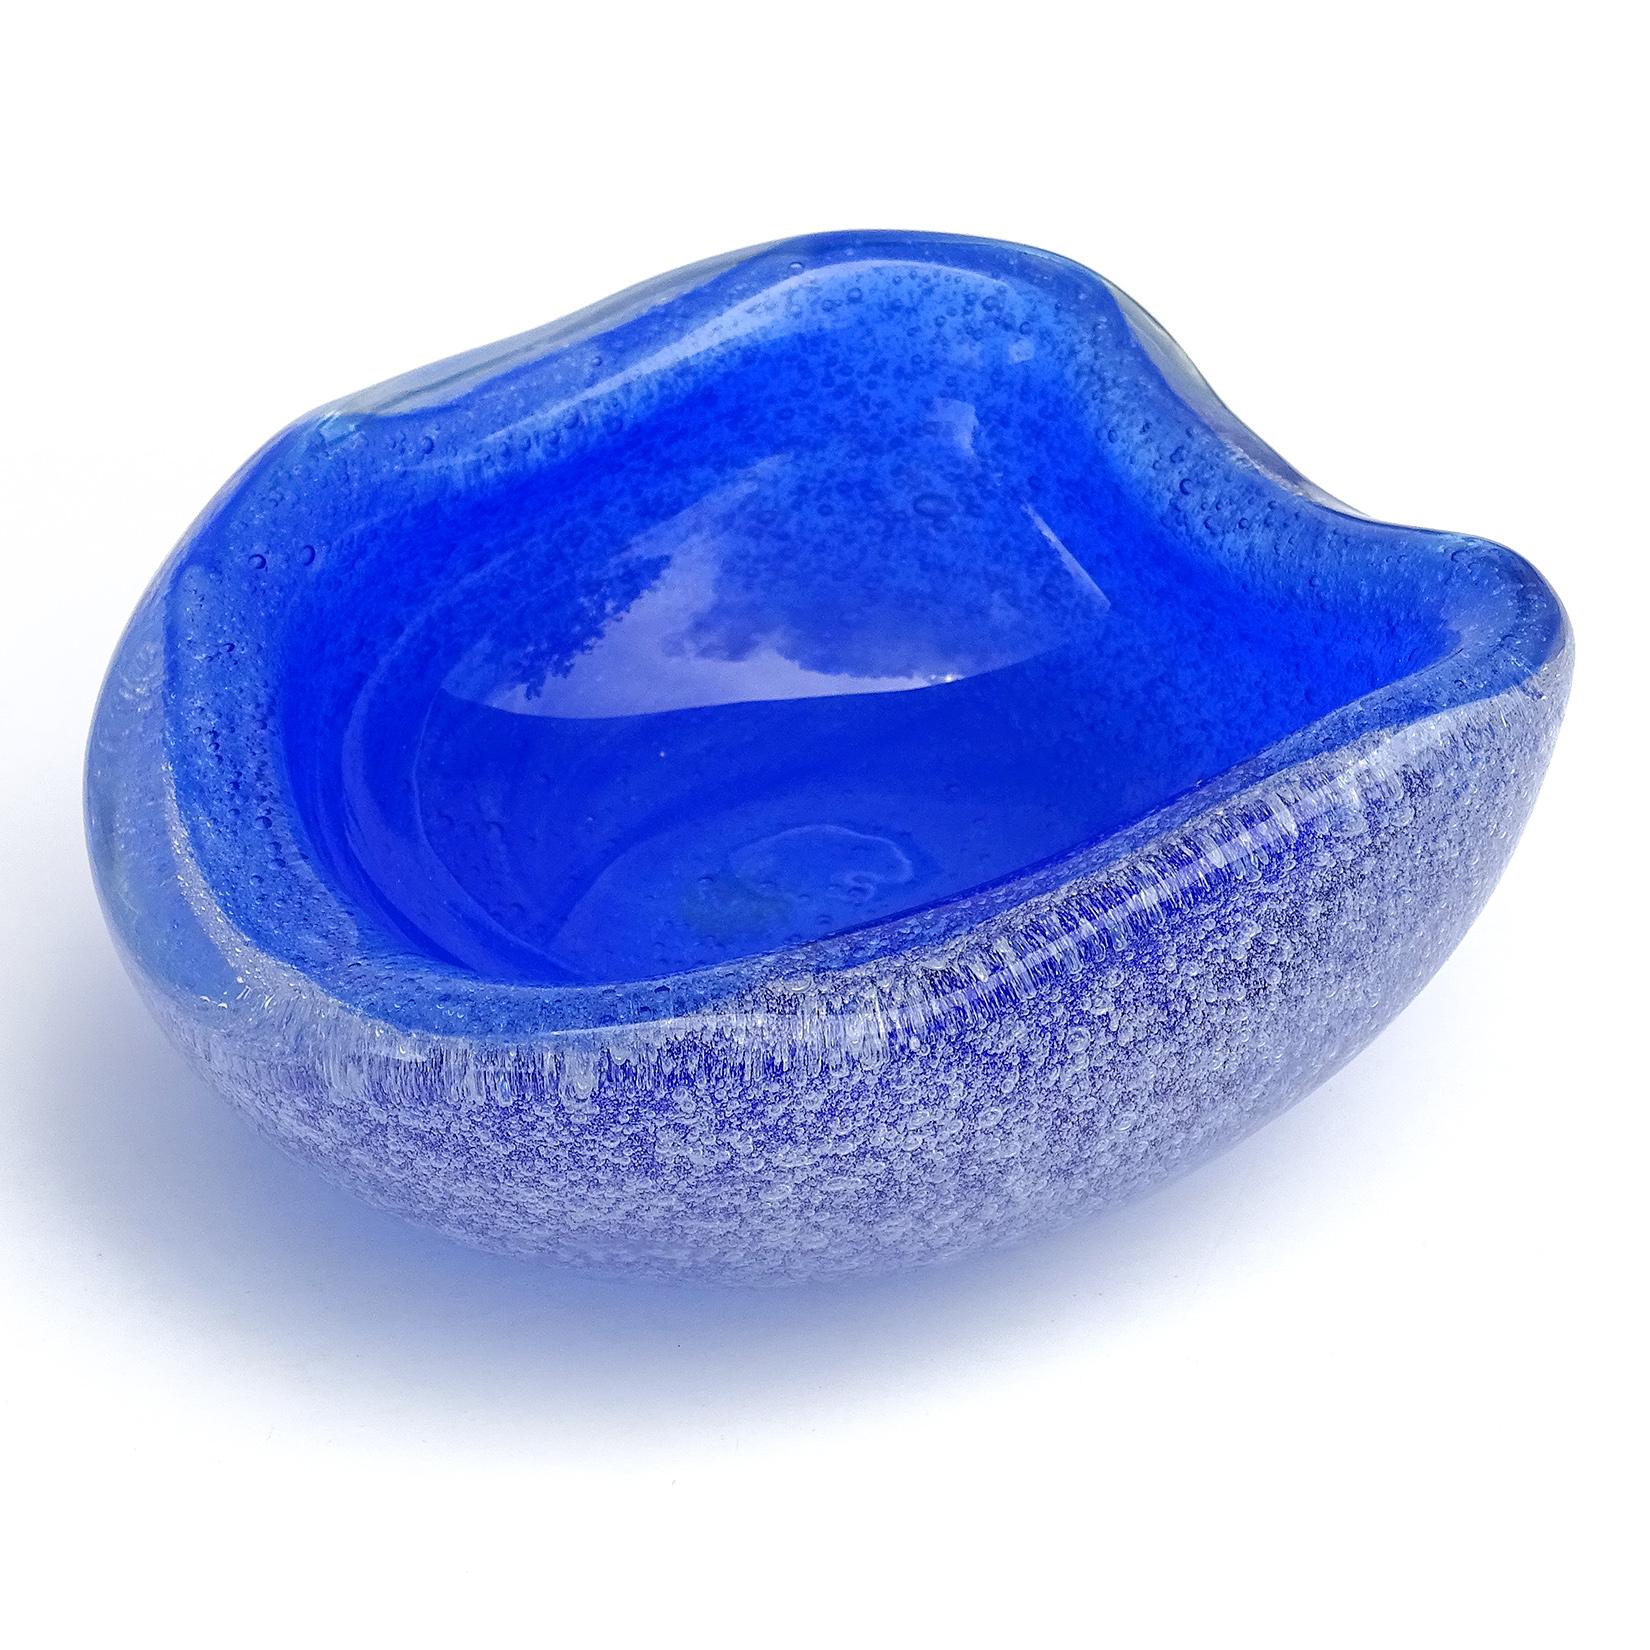 20th Century Seguso Murano Cobalt Blue a Bollicine Pulegoso Italian Art Glass Bowl Vide-Poche